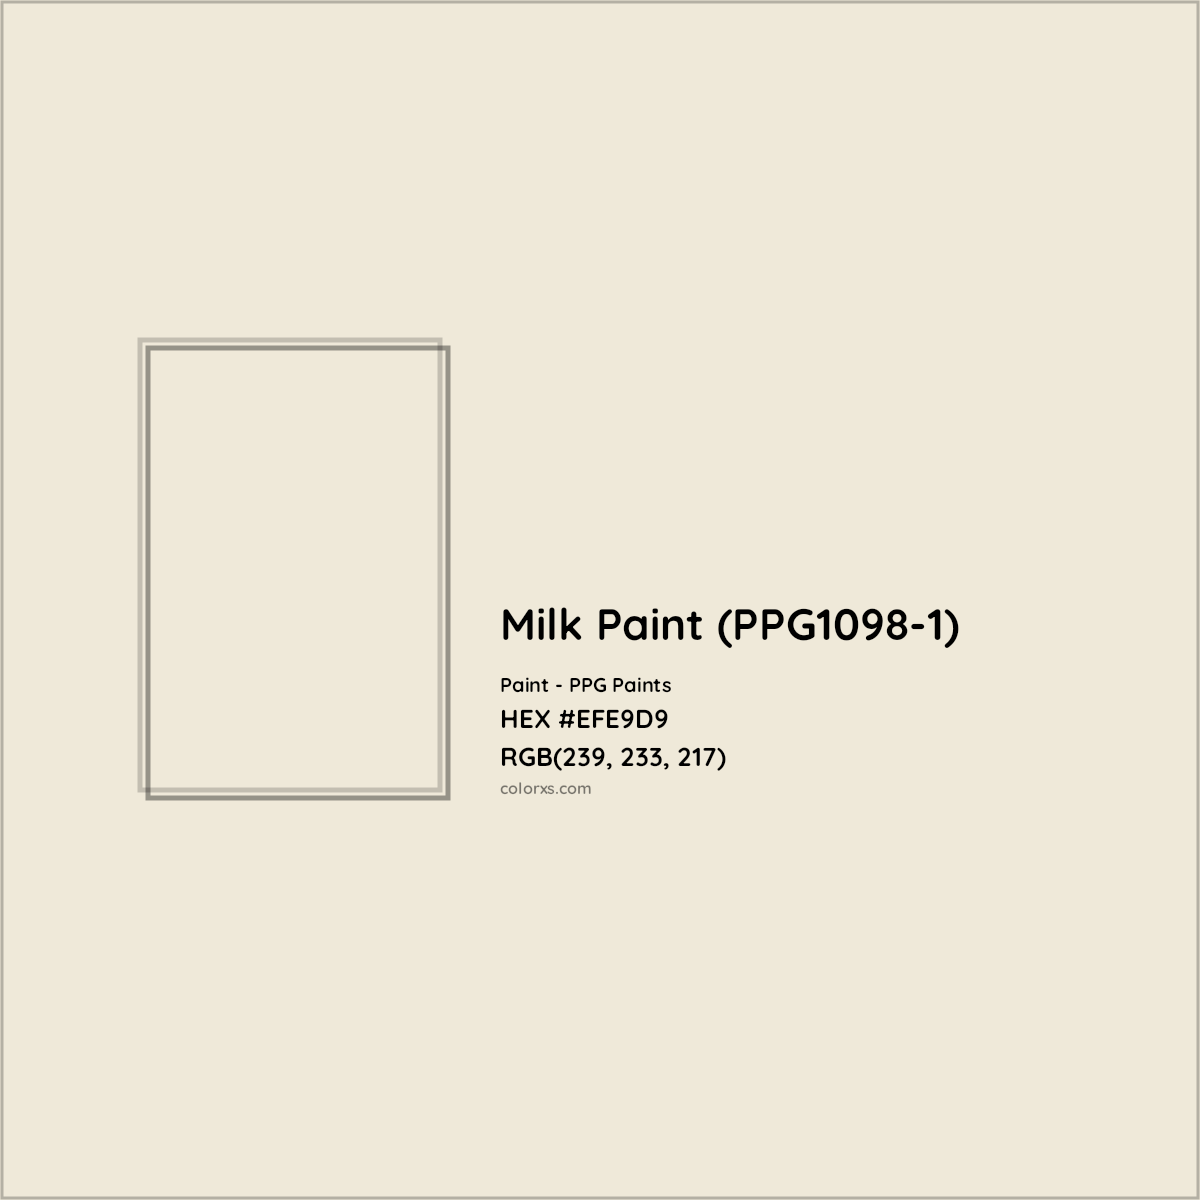 HEX #EFE9D9 Milk Paint (PPG1098-1) Paint PPG Paints - Color Code